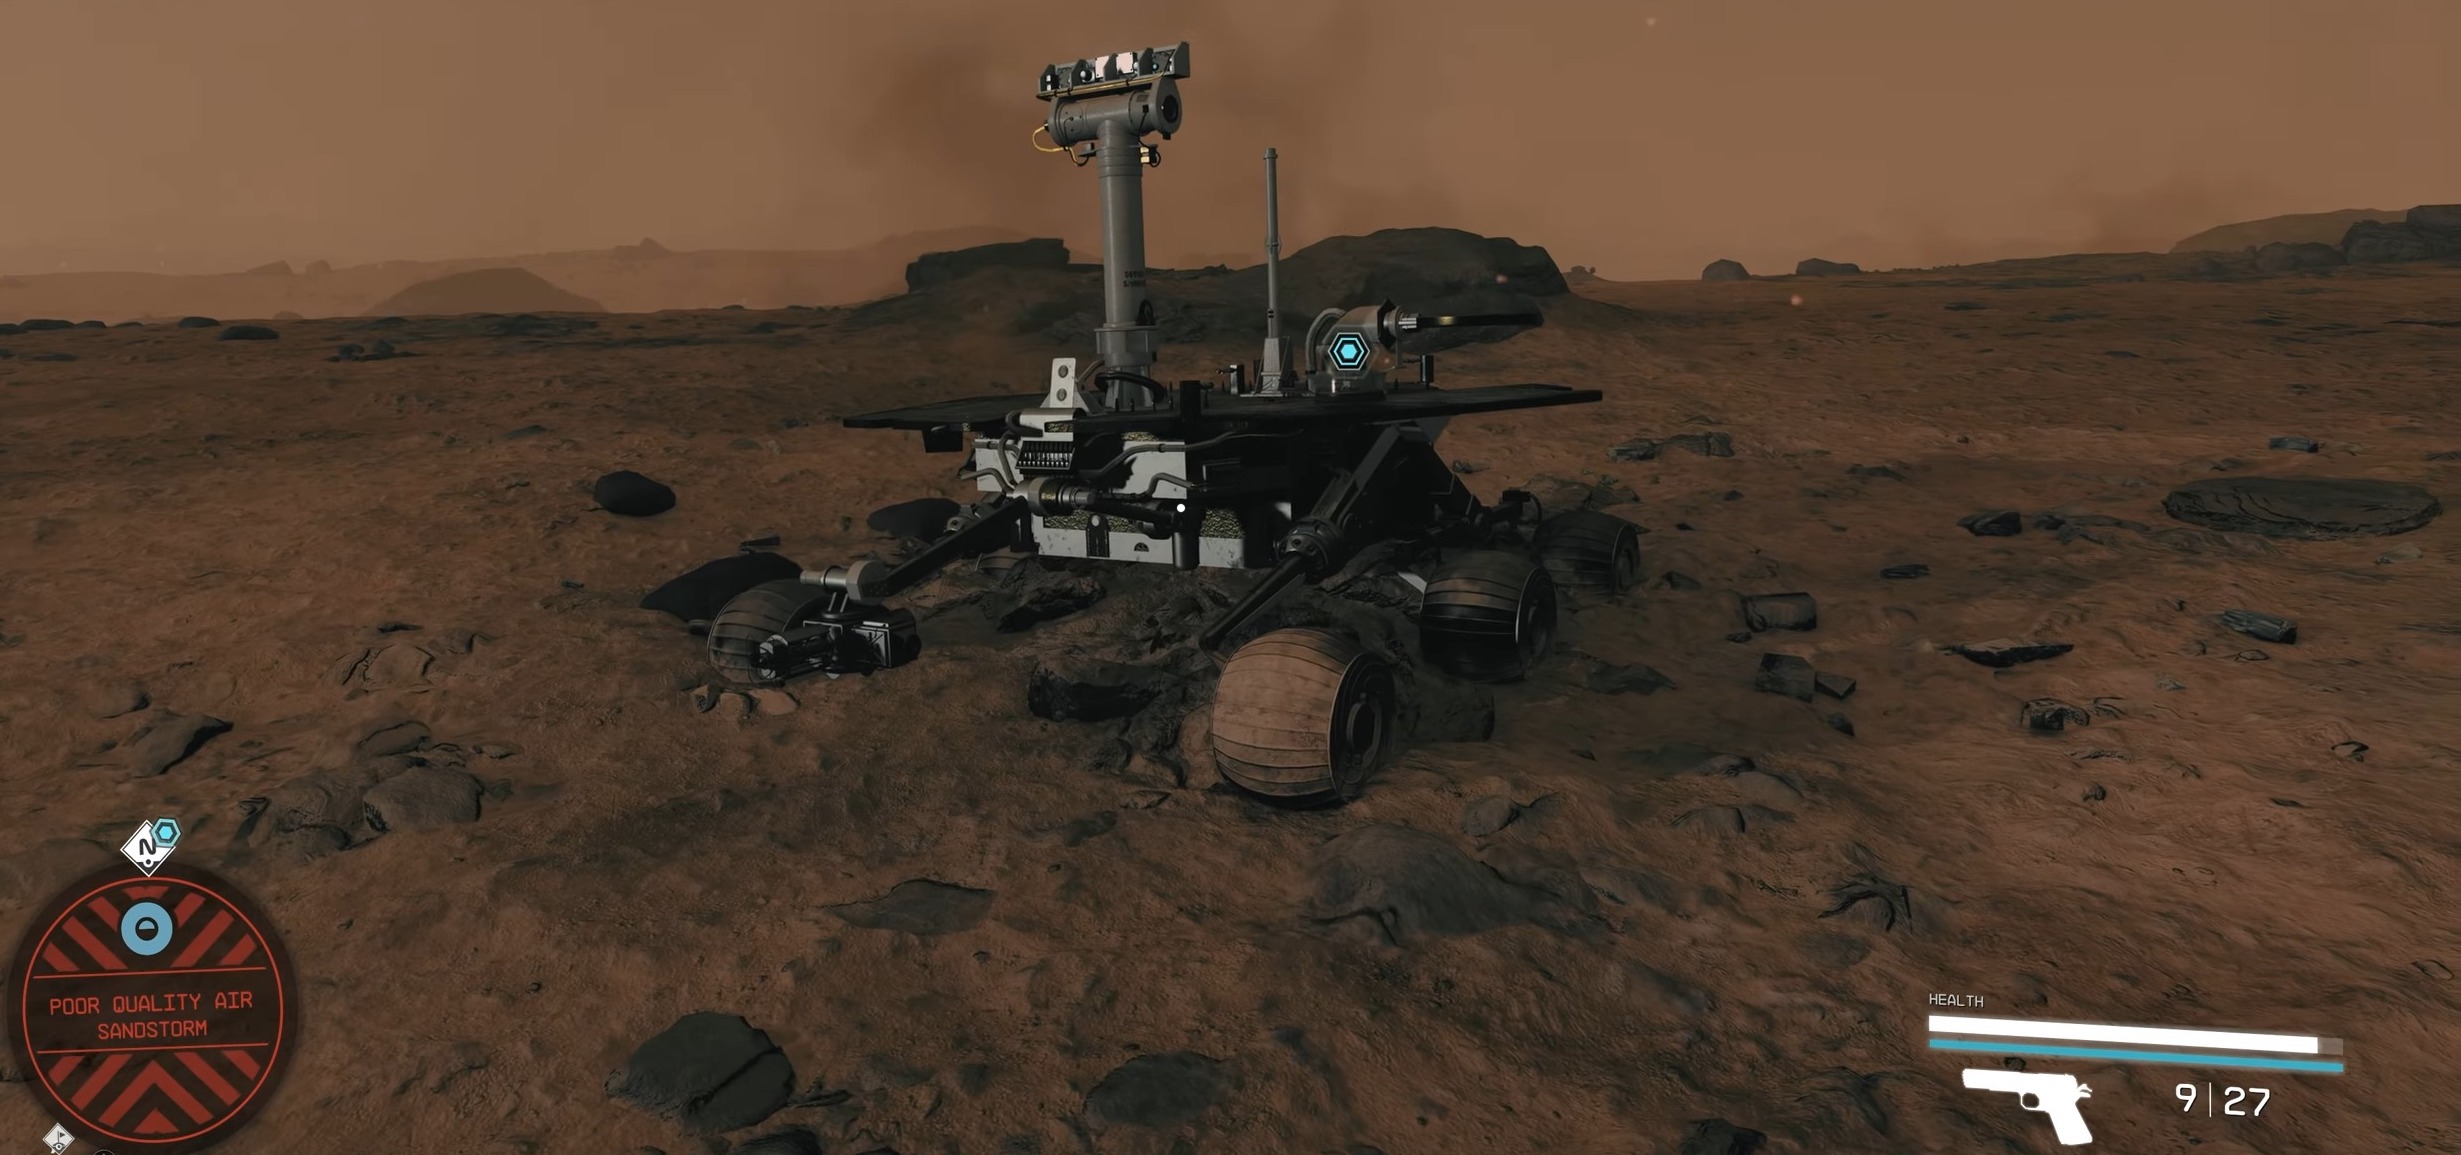 Opportunity Mars Rover – Mars Landmark